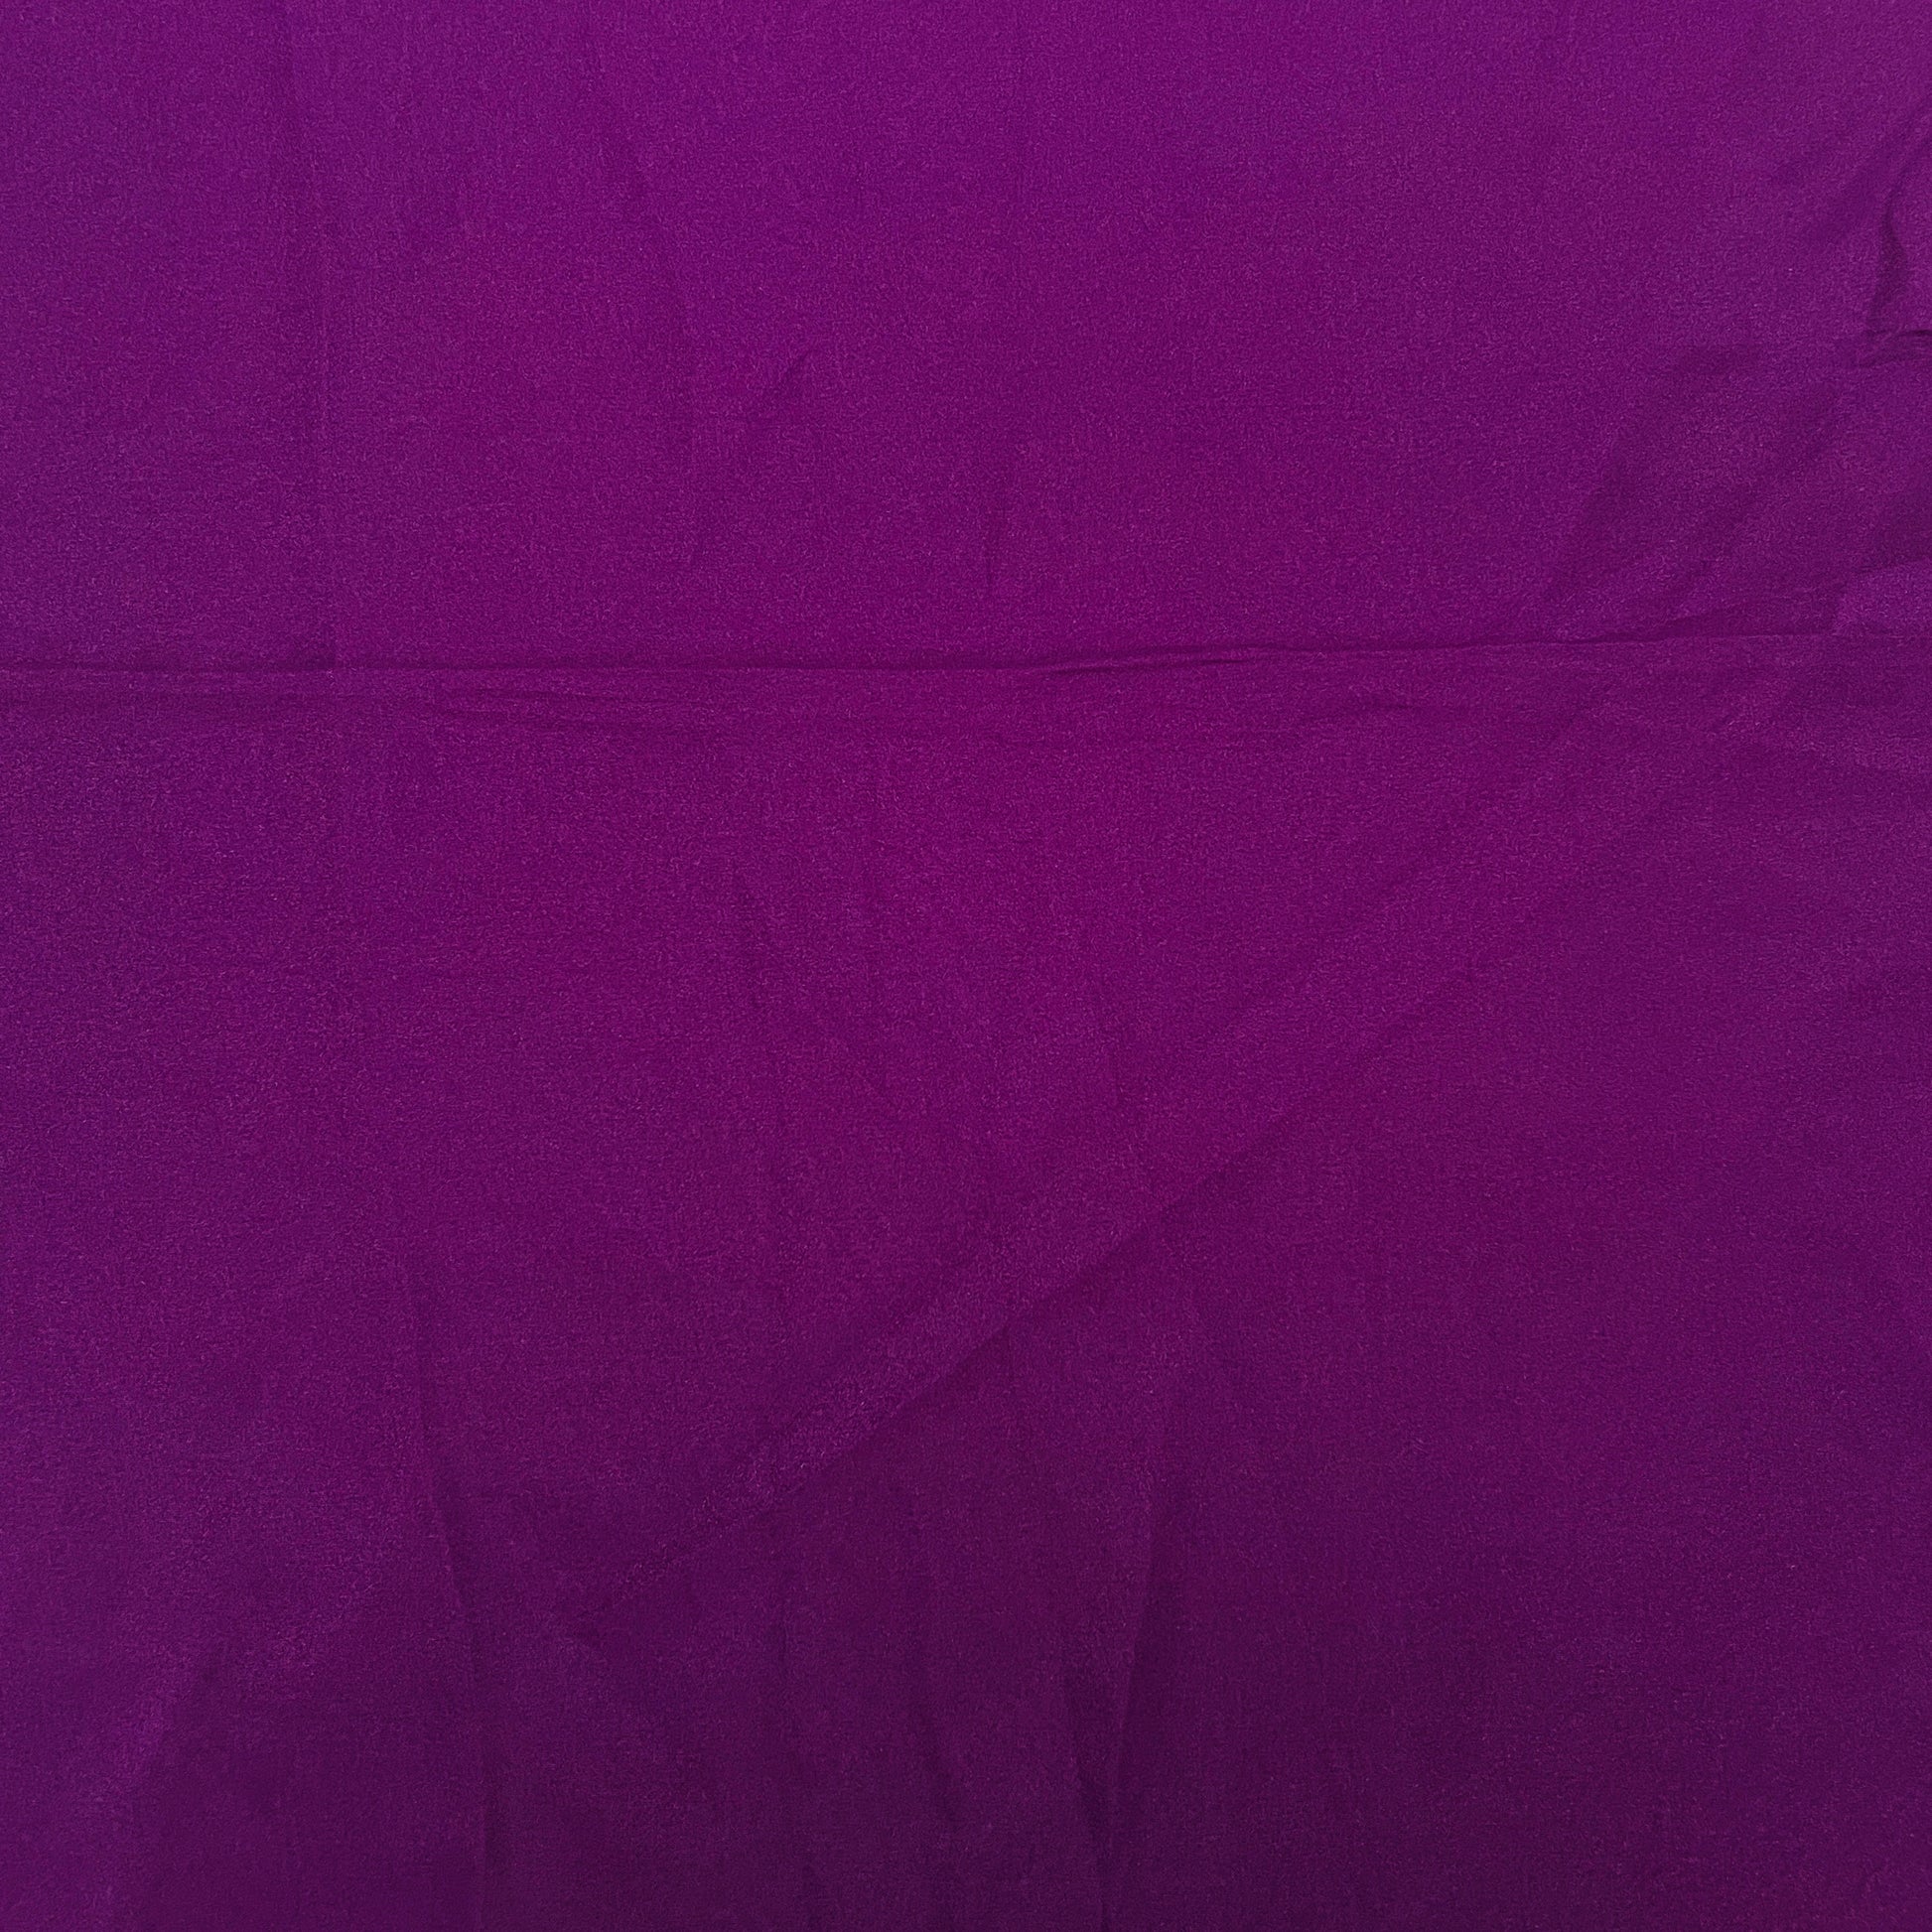 Violet Solid Satin Organza Fabric - TradeUNO